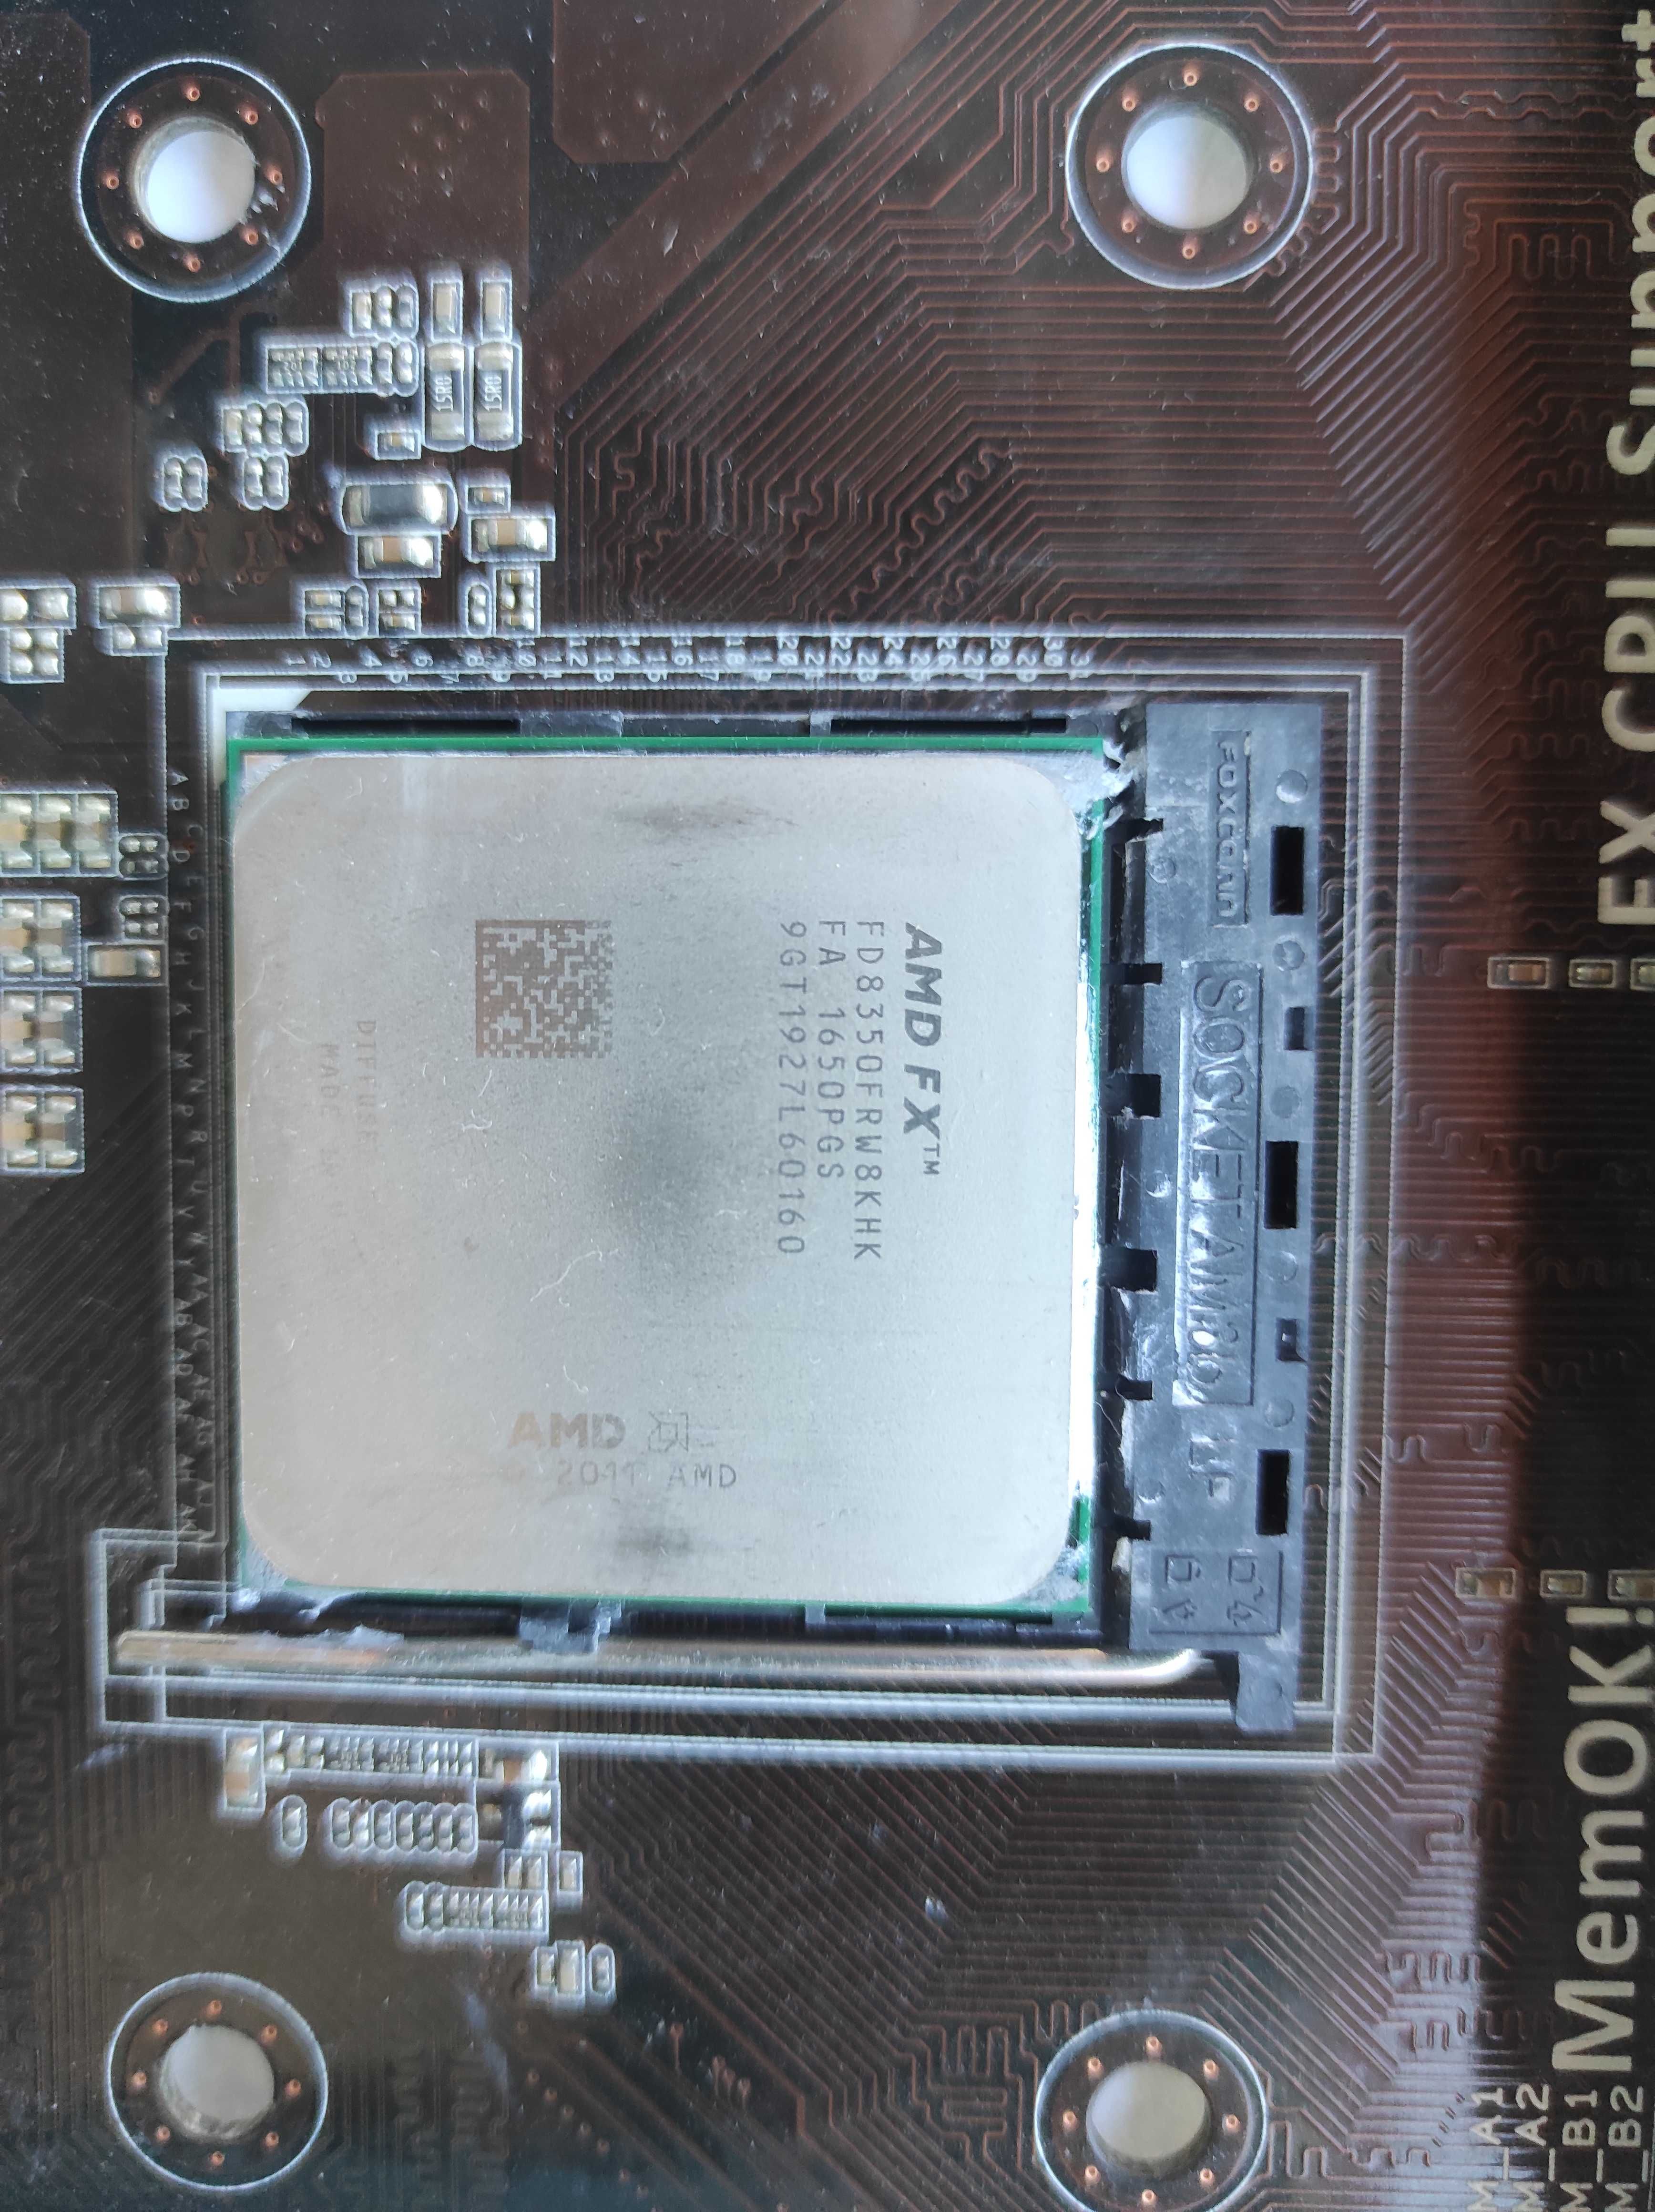 Bundle com motherboard Asus M5 A97 R2.0, Processador AMD FX 8350